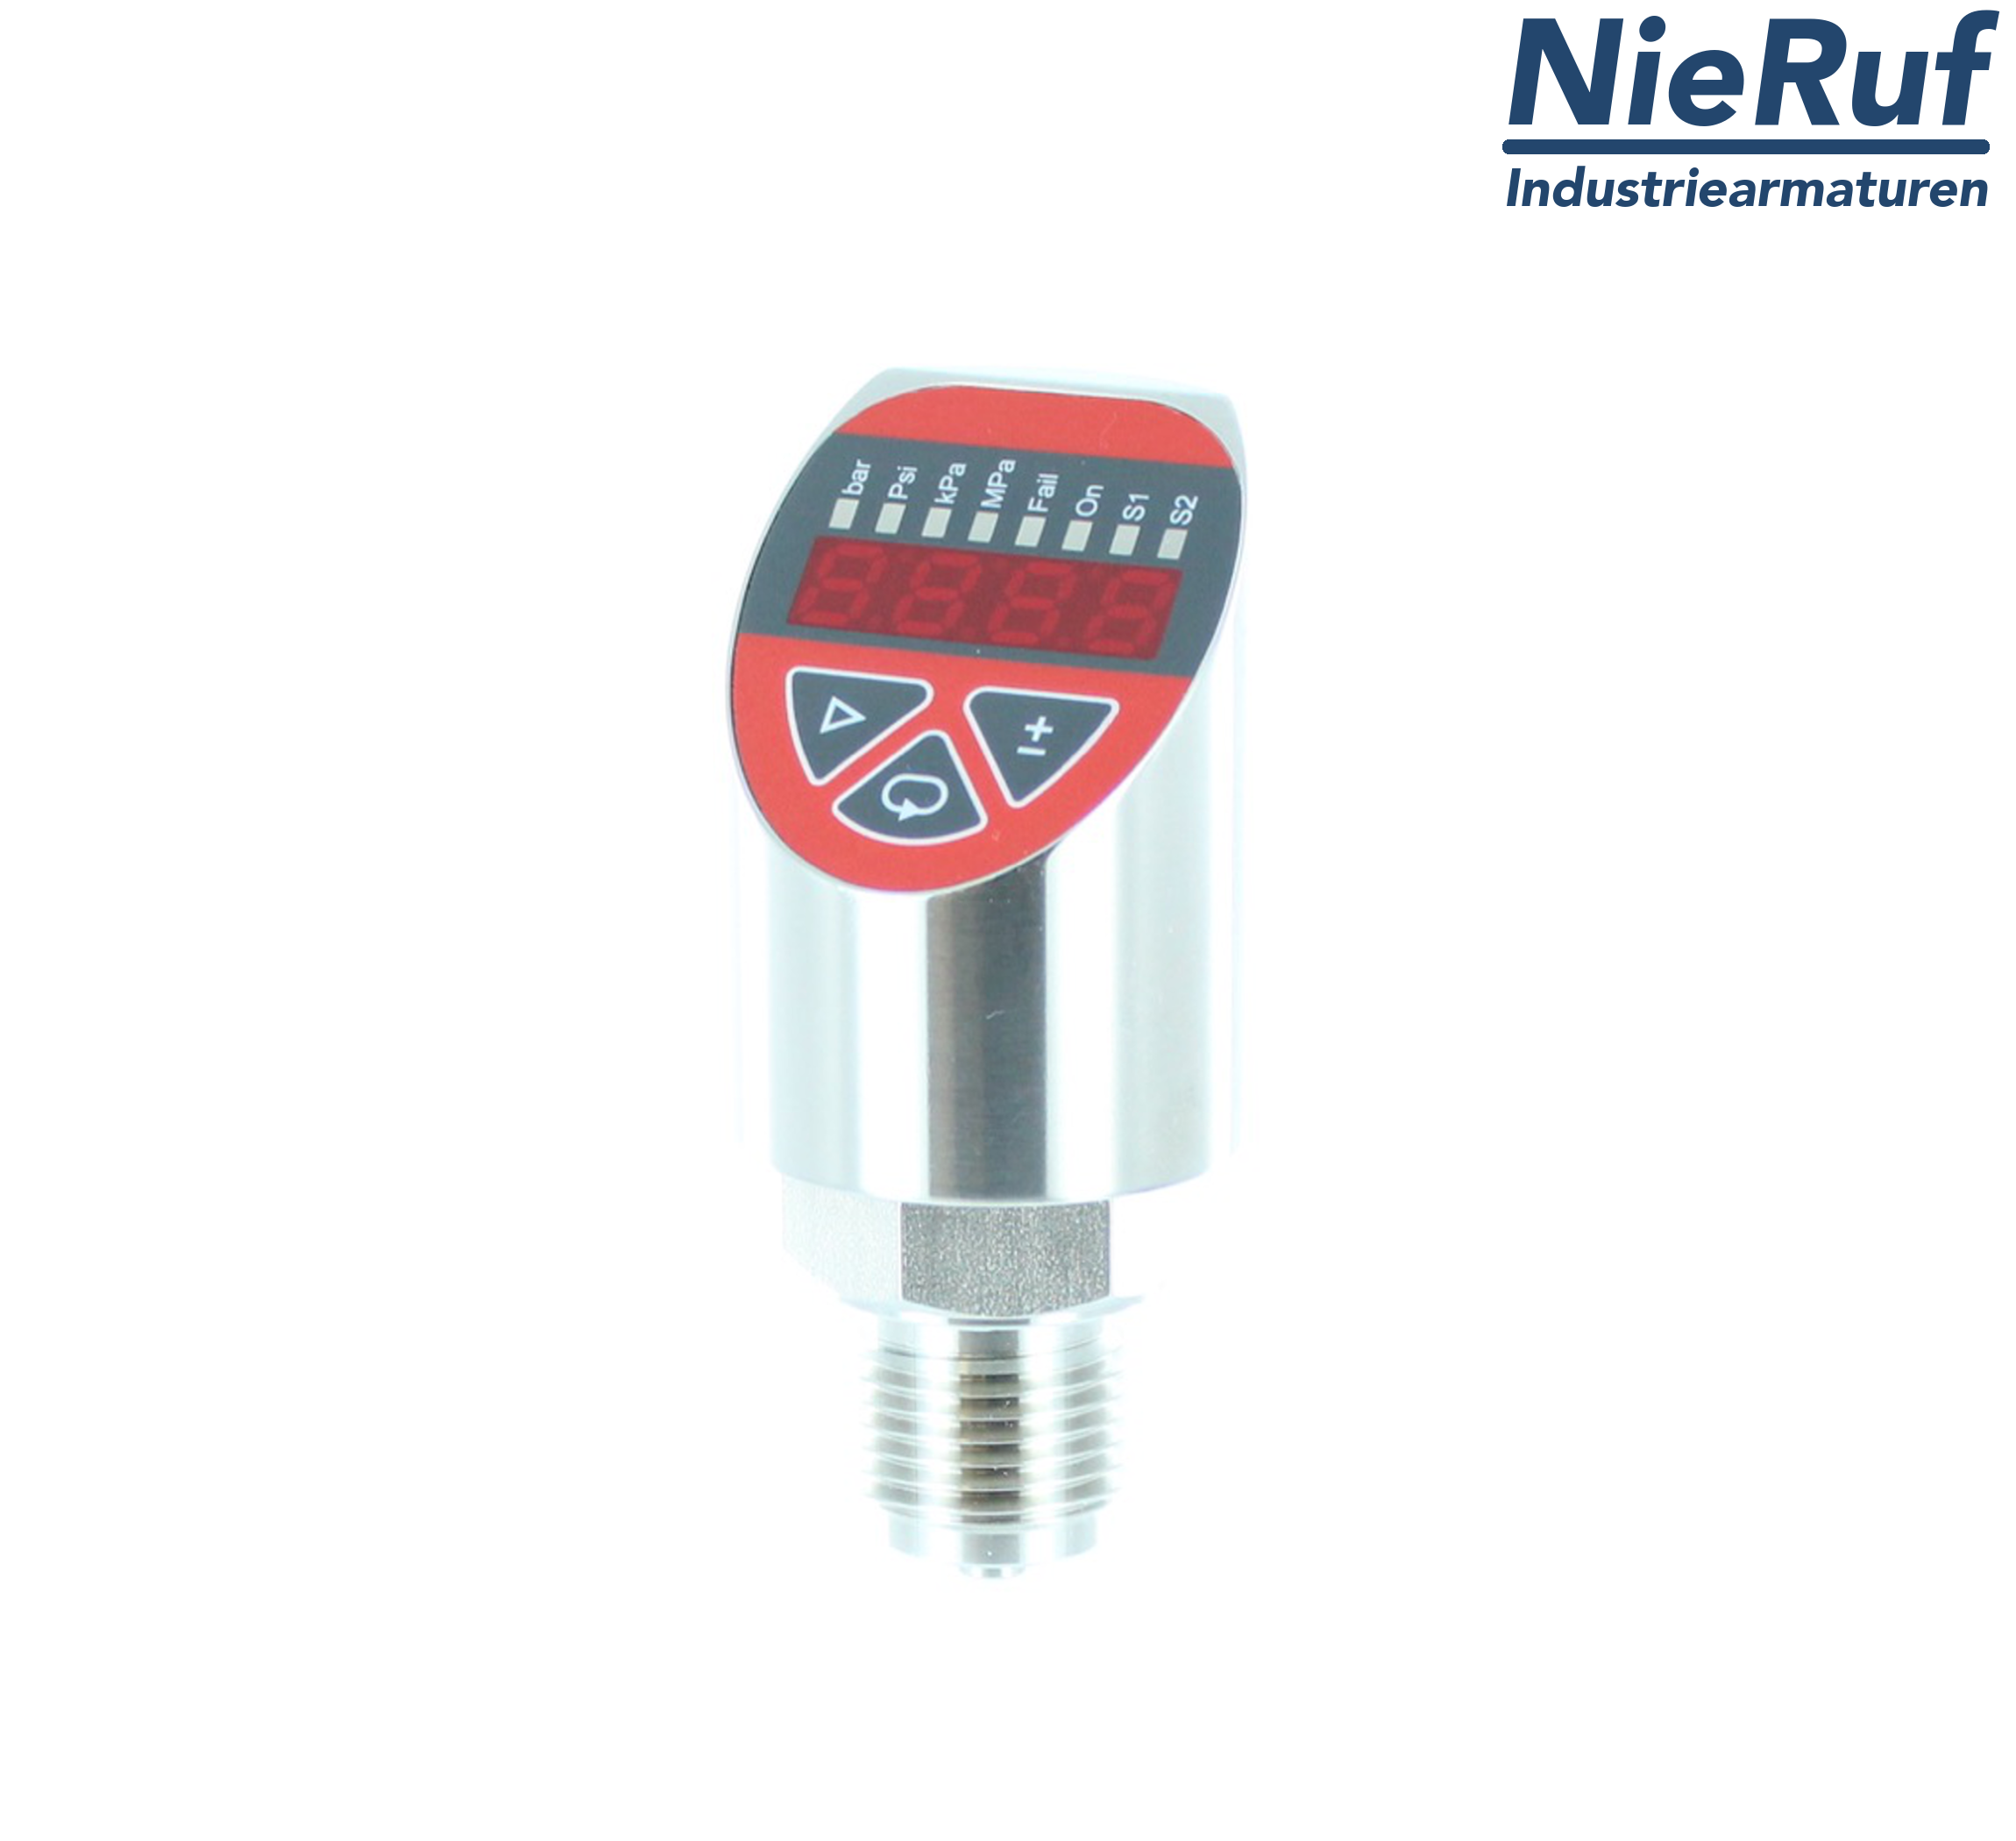 digital pressure sensor G 1/4" B 4-wire: 1xPNP, 1x4 - 20mA FPM 0,0 - 400,0 bar